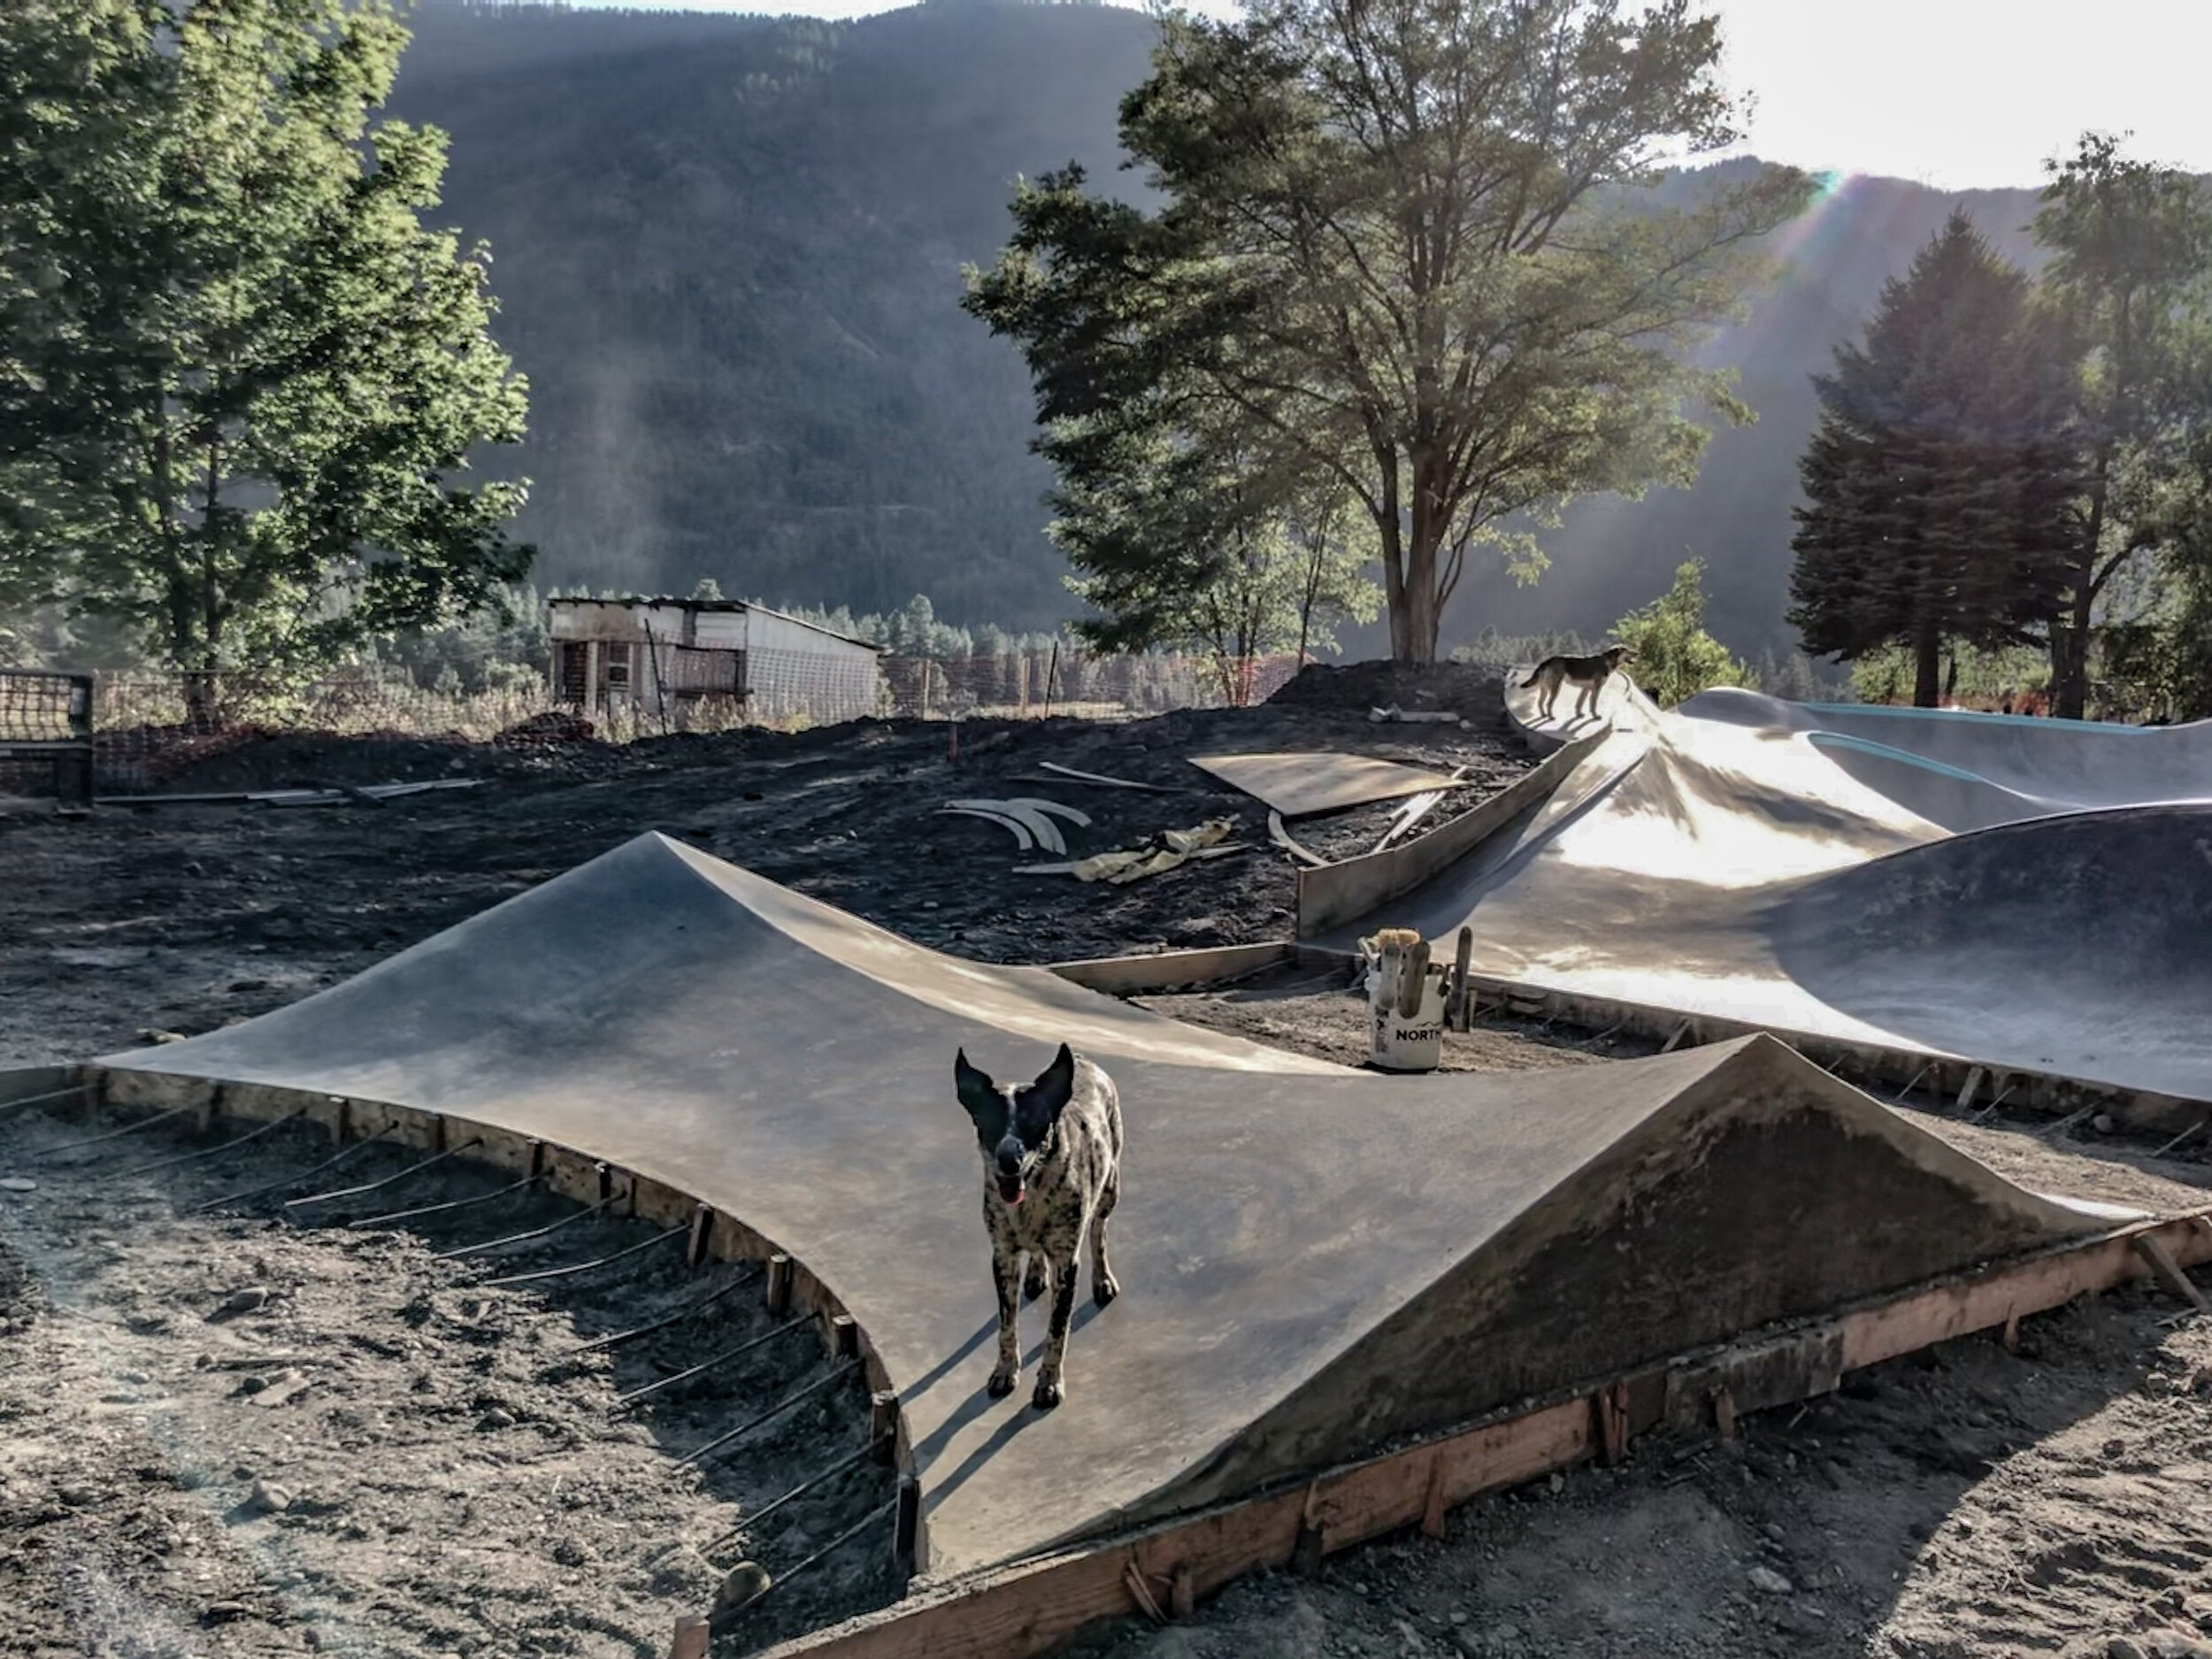 Alberton, Montana pup tent 👍🏼